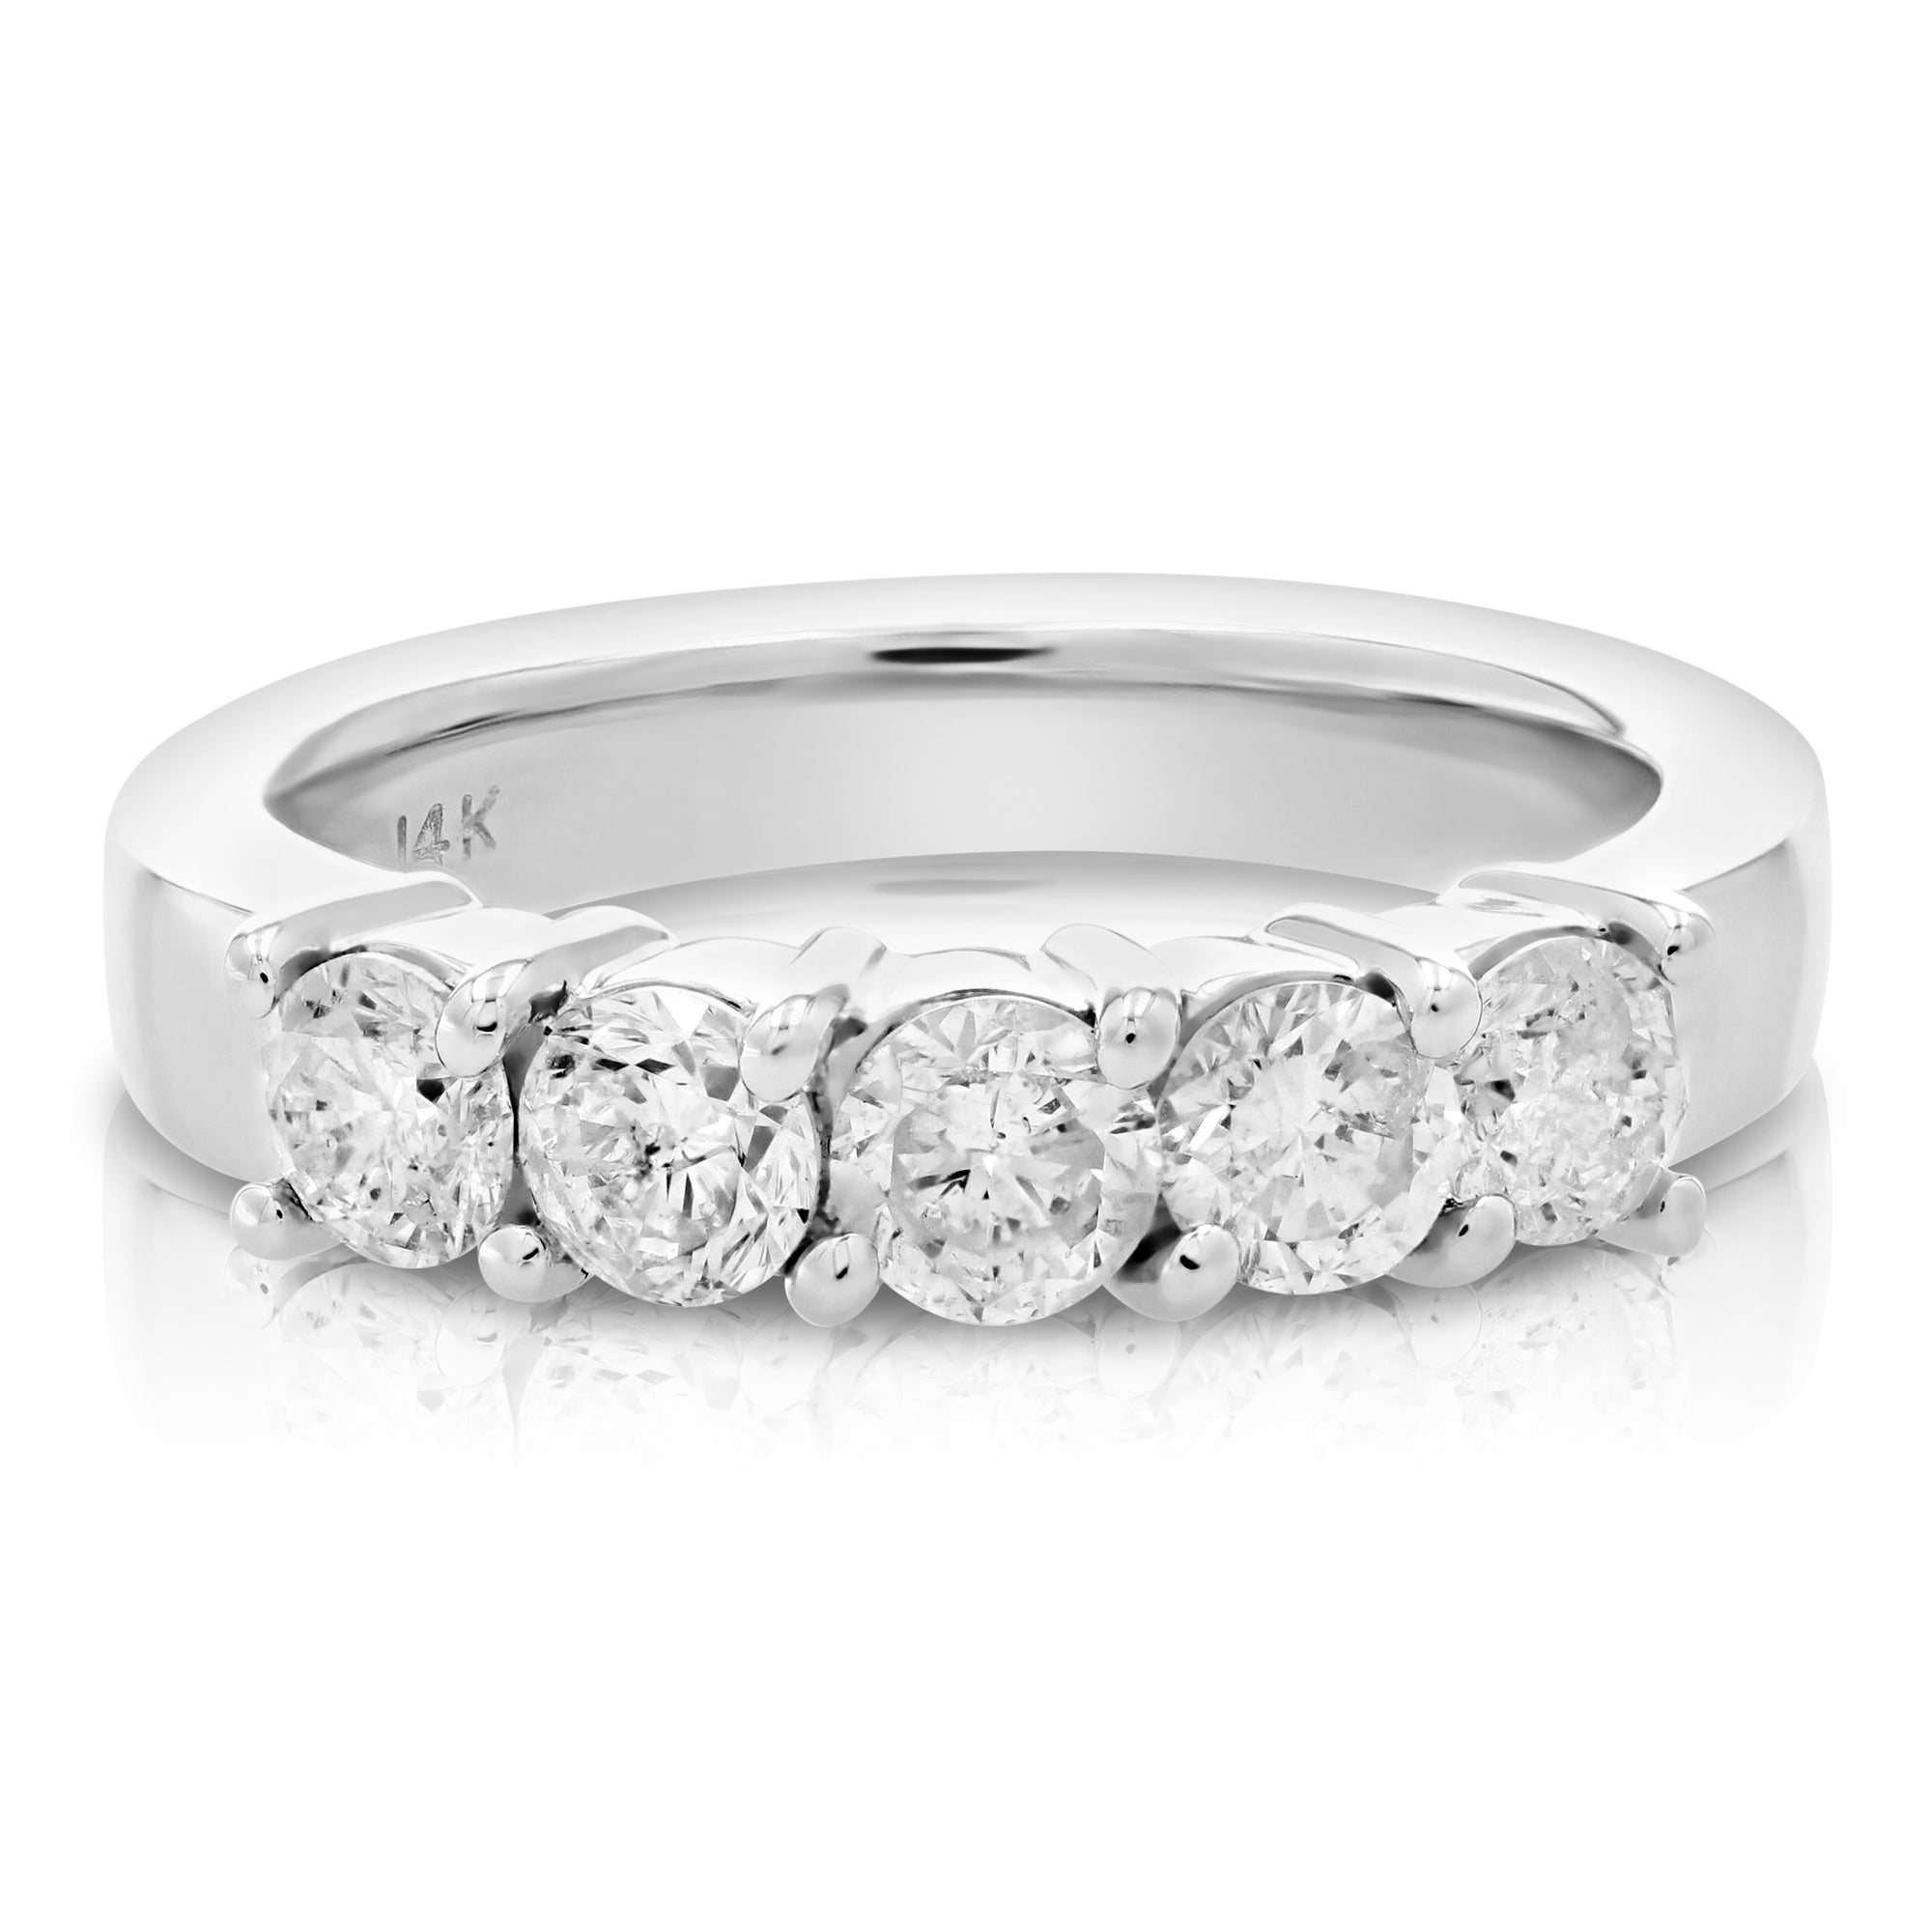 1.25 cttw Diamond 5 Stone Ring 14K White Gold Size 7